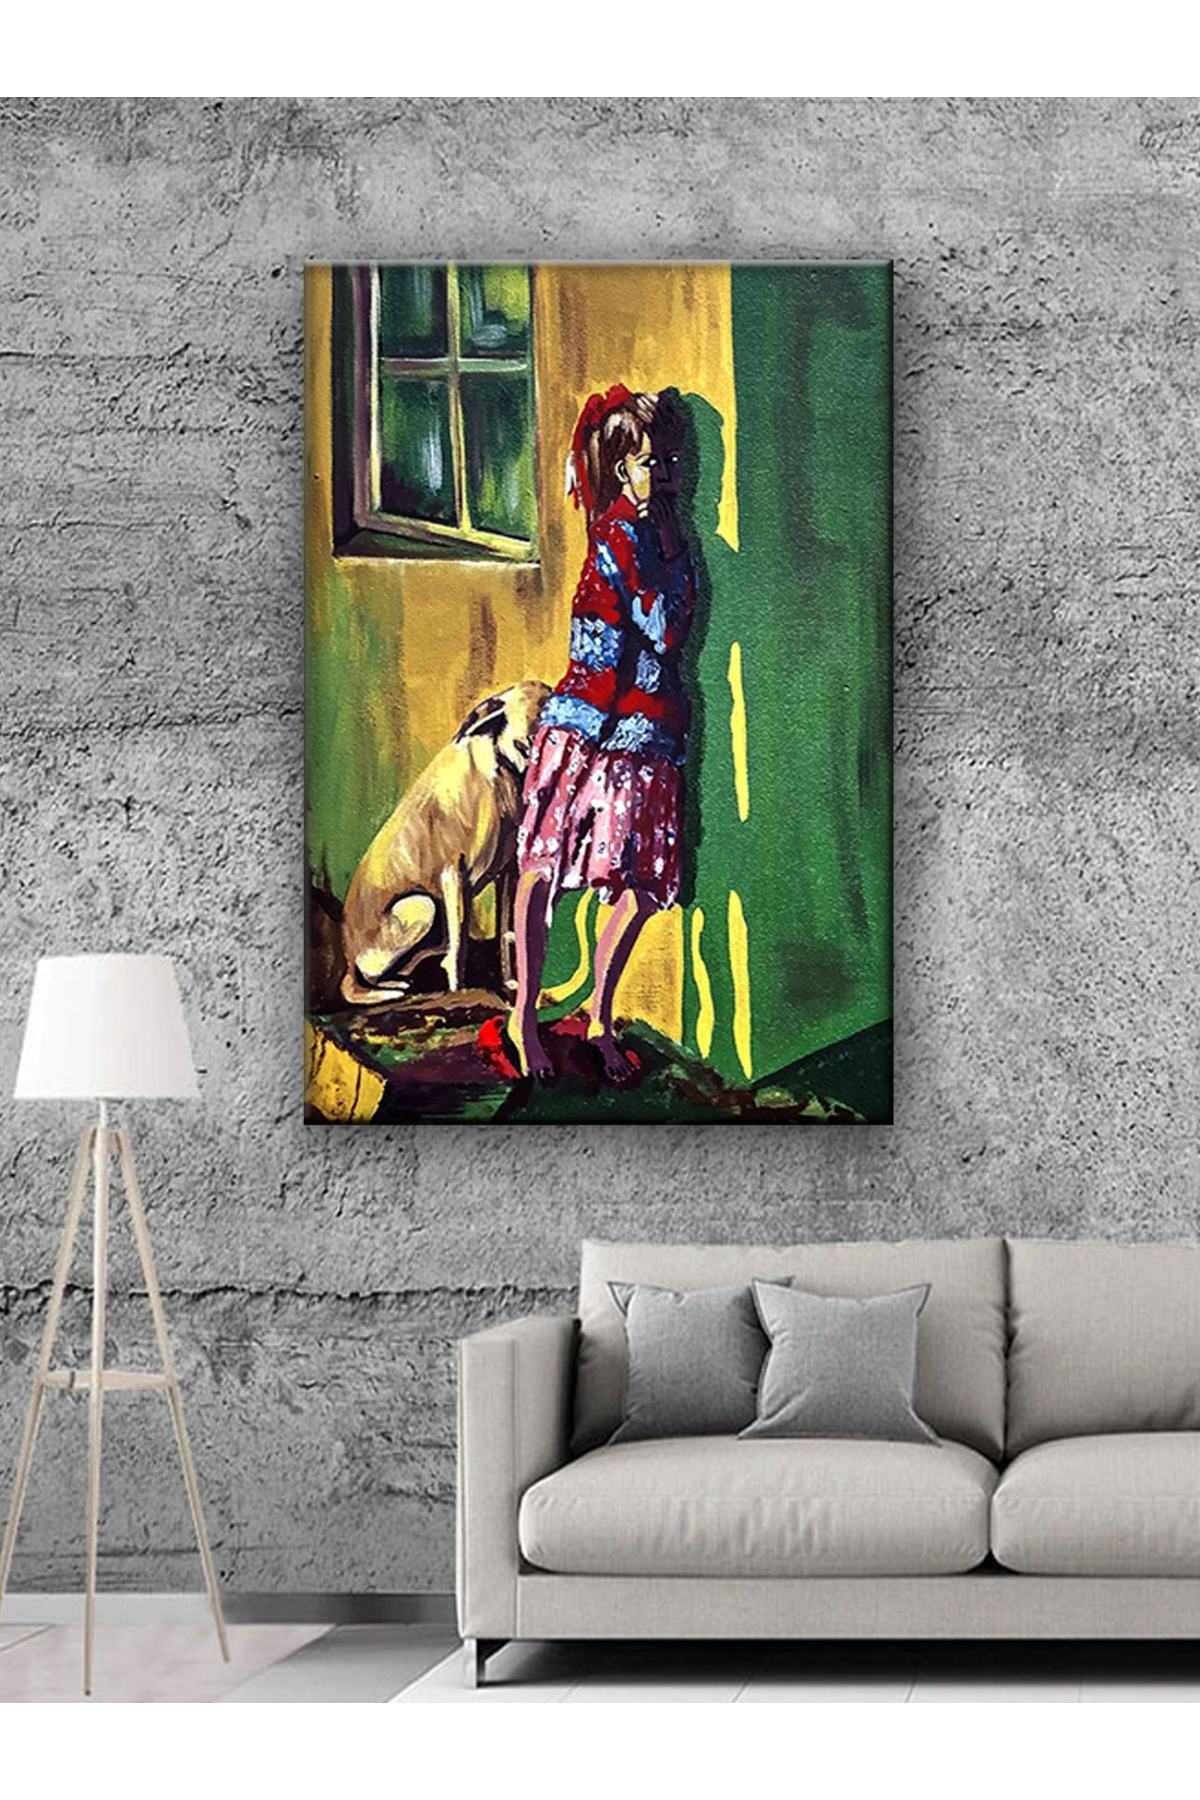 CLZ104 Sanatsal Kız Ve Köpek Tablo  (70 x 50) cm